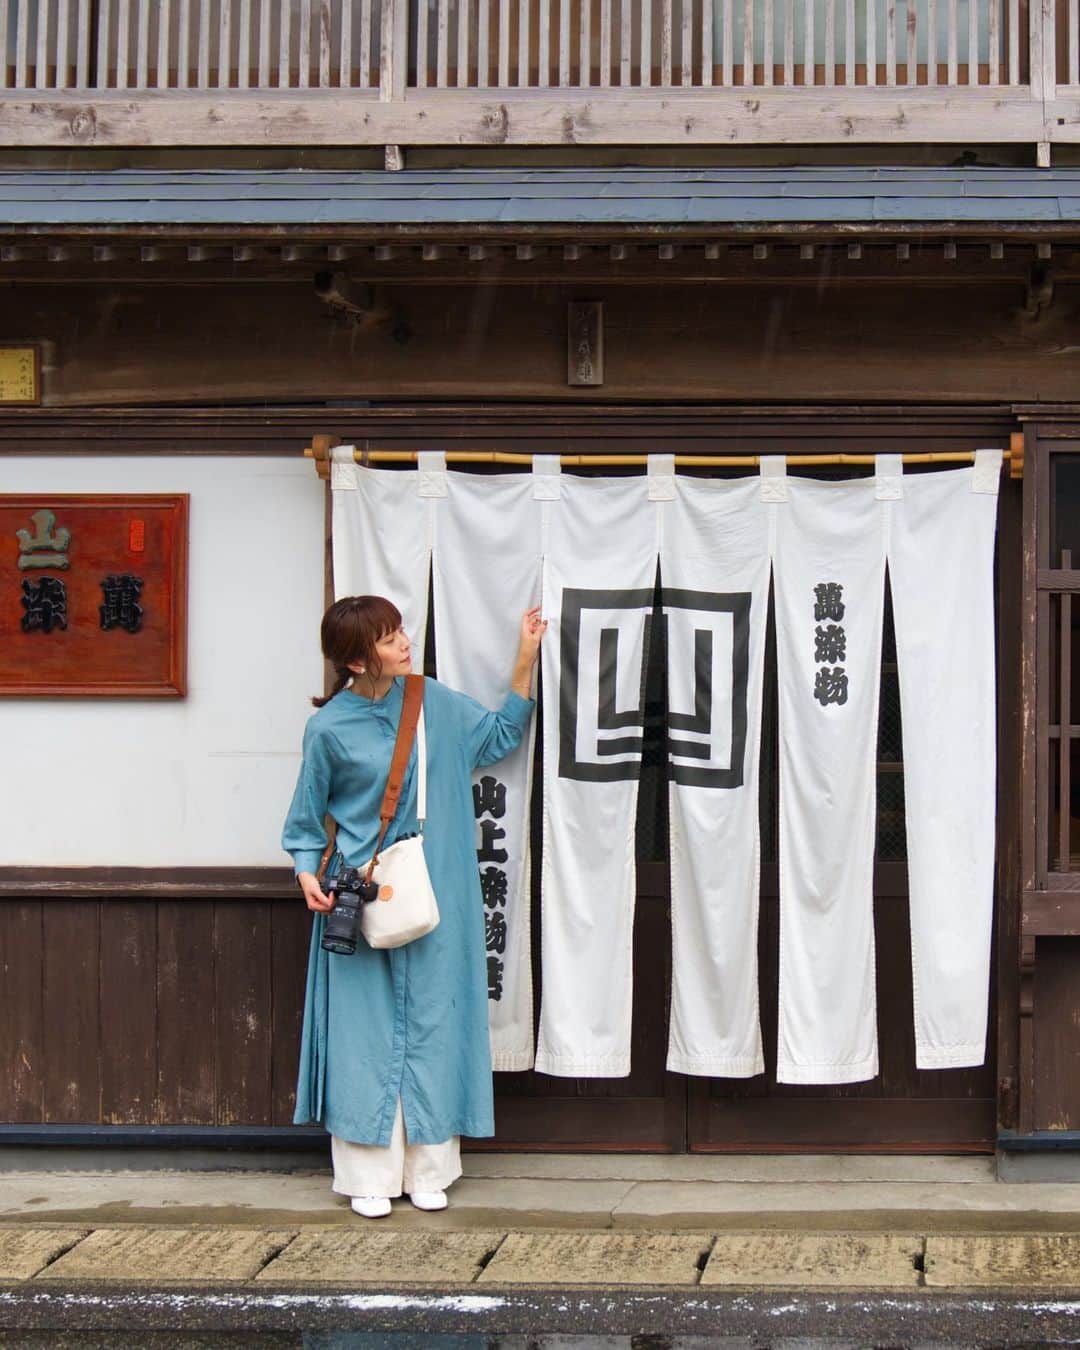 Koichiのインスタグラム：「. . 夏の終わり　新潟 村上の旅  ［5］村上のお愉しみ --------------------  村上での2泊3日。素敵な場所を沢山巡りました。 今回は、ここでしか体験できないことや、村上でしか味わえない食をご紹介。  📍山上染物店 360年の歴史がある染物店。江戸時代の町屋建築が素敵で、登録有形文化財の母屋も公開されています。 今回は村上茶を使った茶染めを体験させて頂きました。  📍茶寮 カネエイ 村上茶の老舗「富士茶園」が、製茶工場をリノベーションした隠れ家のような日本茶専門カフェ。 茶葉も水も茶器も淹れ方も、全てにこだわった村上茶が堪能できます。  📍Casa del Faro カーサ・デル・ファーロ 東京から移住したご夫婦が、昭和の匂いが残る古民家をリノベーションした一軒家のイタリアン・南欧料理のお店。 地元の海の幸、山の幸、里山の野菜を生かしてアレンジされた料理は、どれも素材の味が生きてて滋味深さを感じるお料理でした。  📍Dinner’s Kitchen Woody 幻の和牛「村上牛」をカジュアルに味わえるダイナー。 実家が生産農家というシェフが、丹精込めて育てられた貴重な村上牛を様々な洋食メニューにして提供されています。 ランチで頂いたローストビーフ丼、美味しすぎました！  #murakami_trip #pr  .」